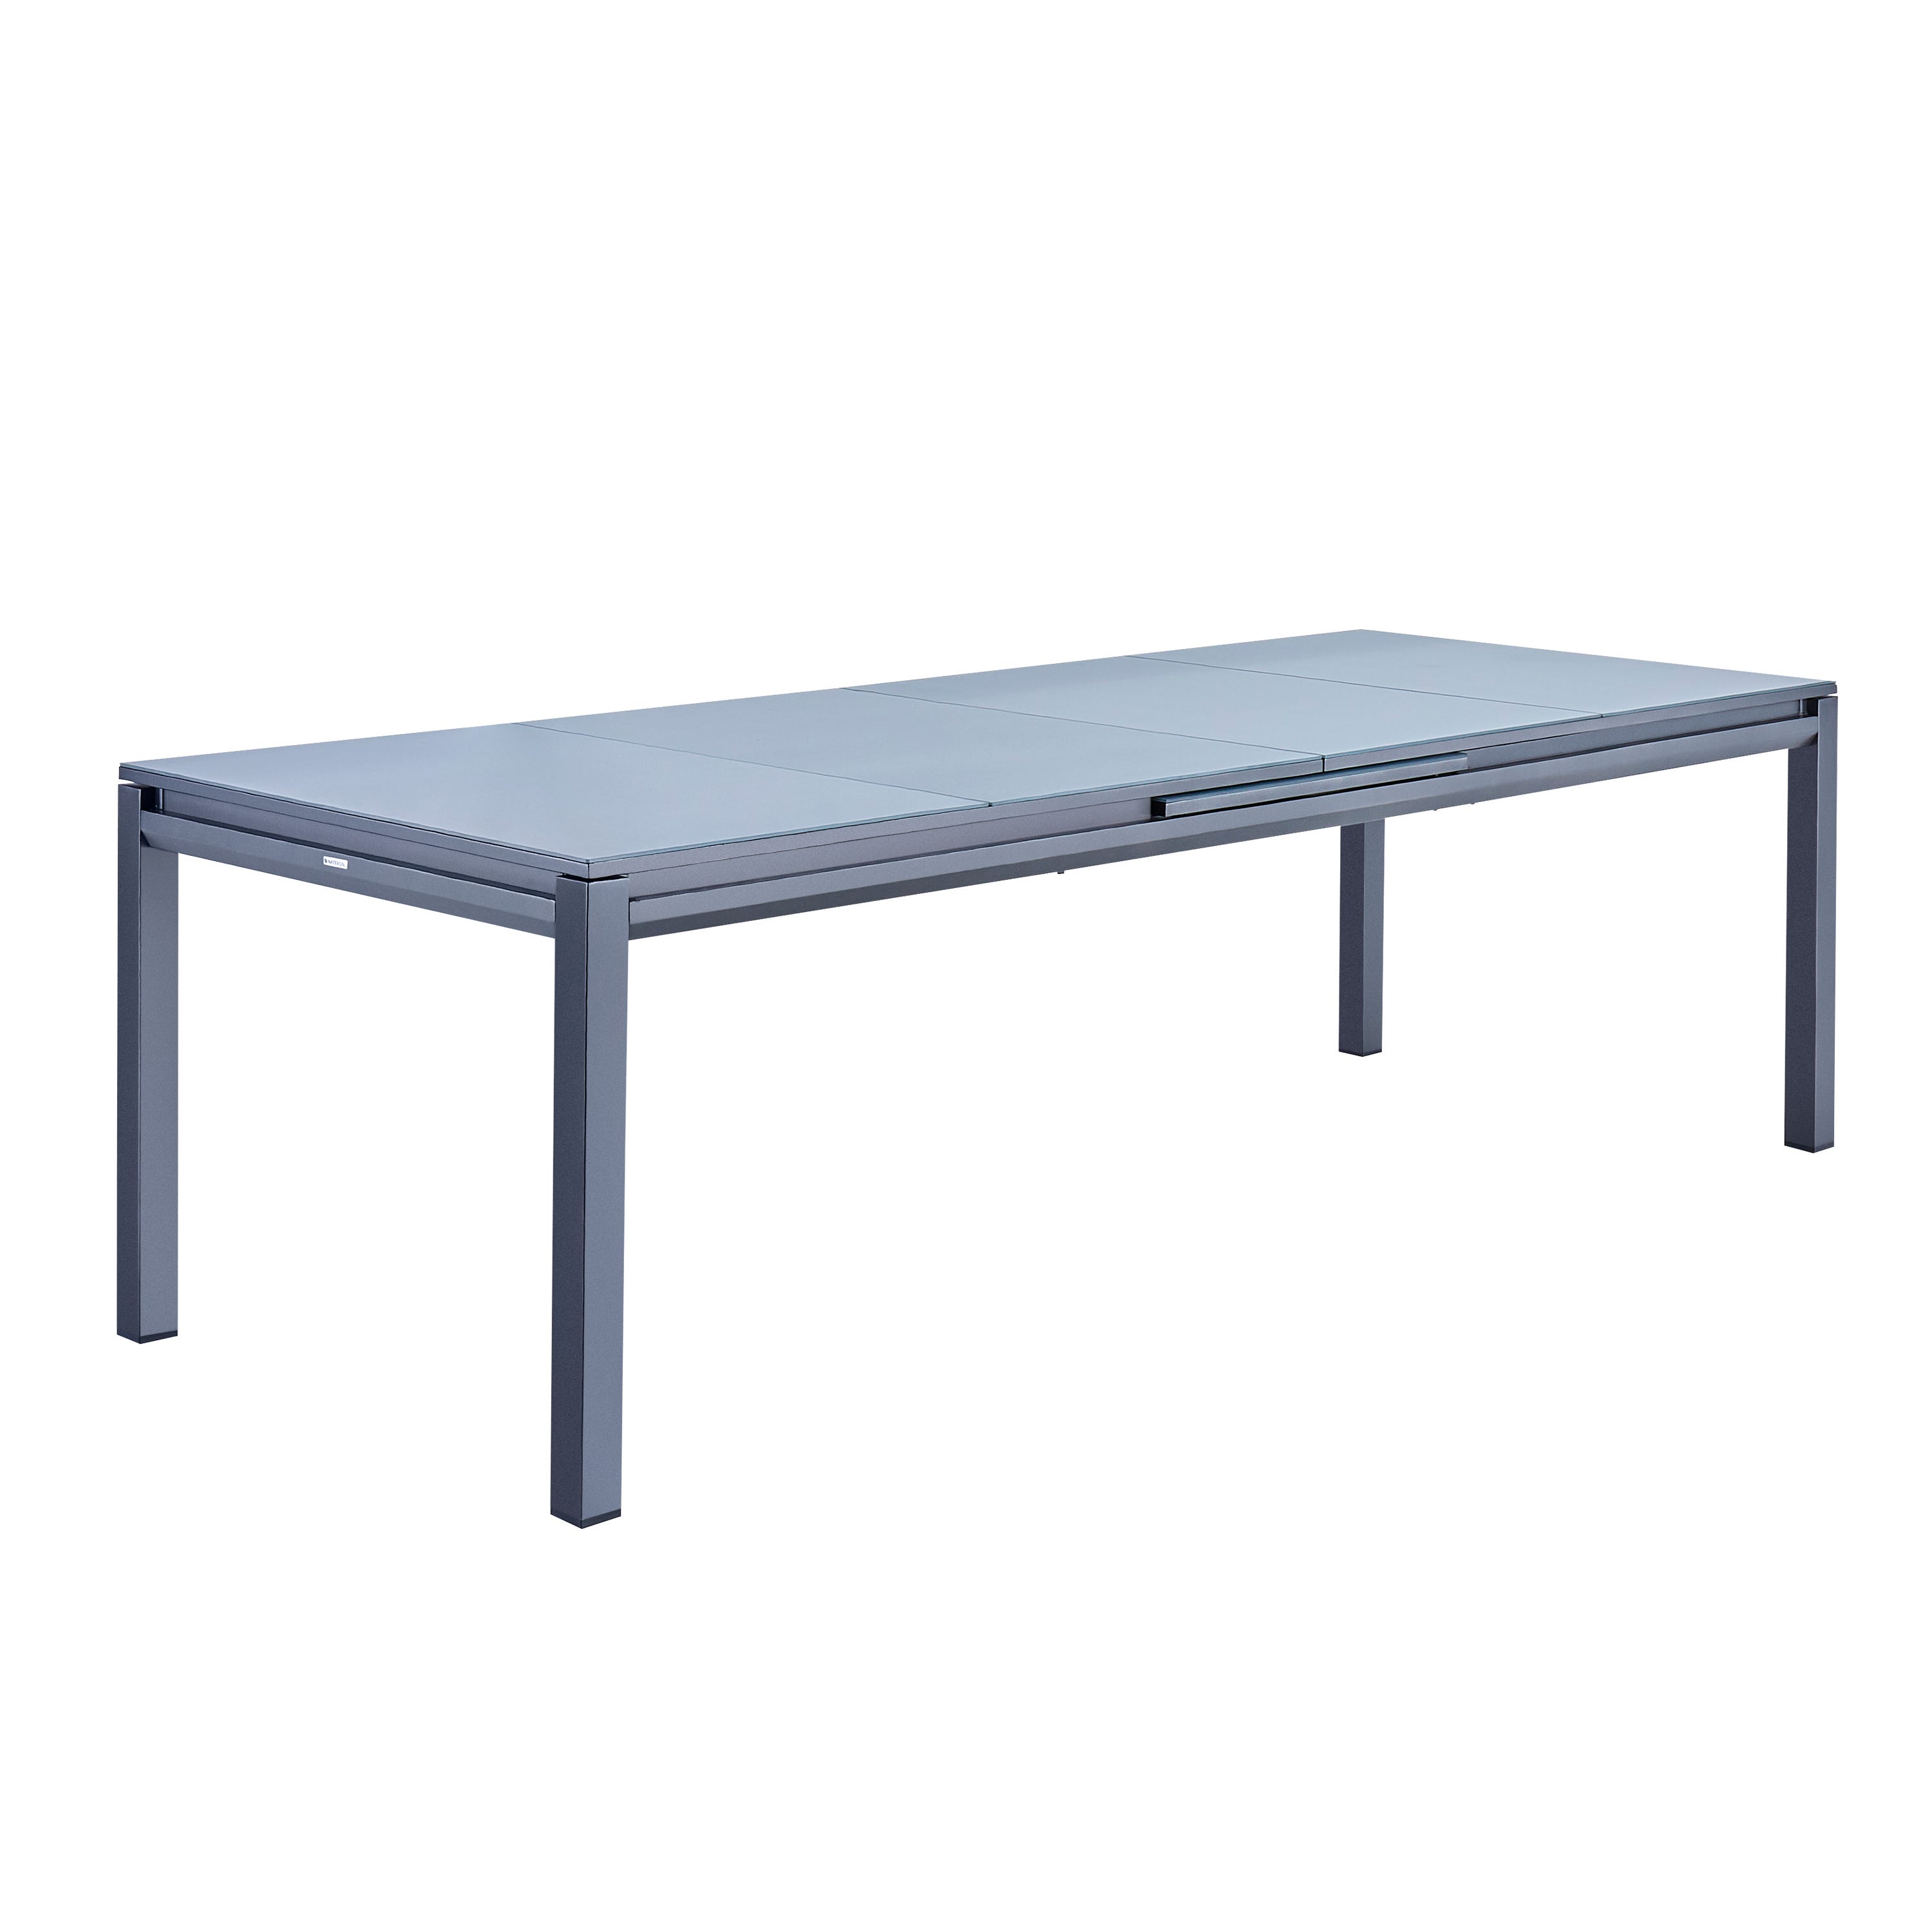 Tavolo da giardino con tavolo allungabile - modello: Odenton, colore:  Antracite/Grigio scuro - Grande tavolo in alluminio, dimensioni: 235/335cm  con prolunga e 10 sedute in textilene